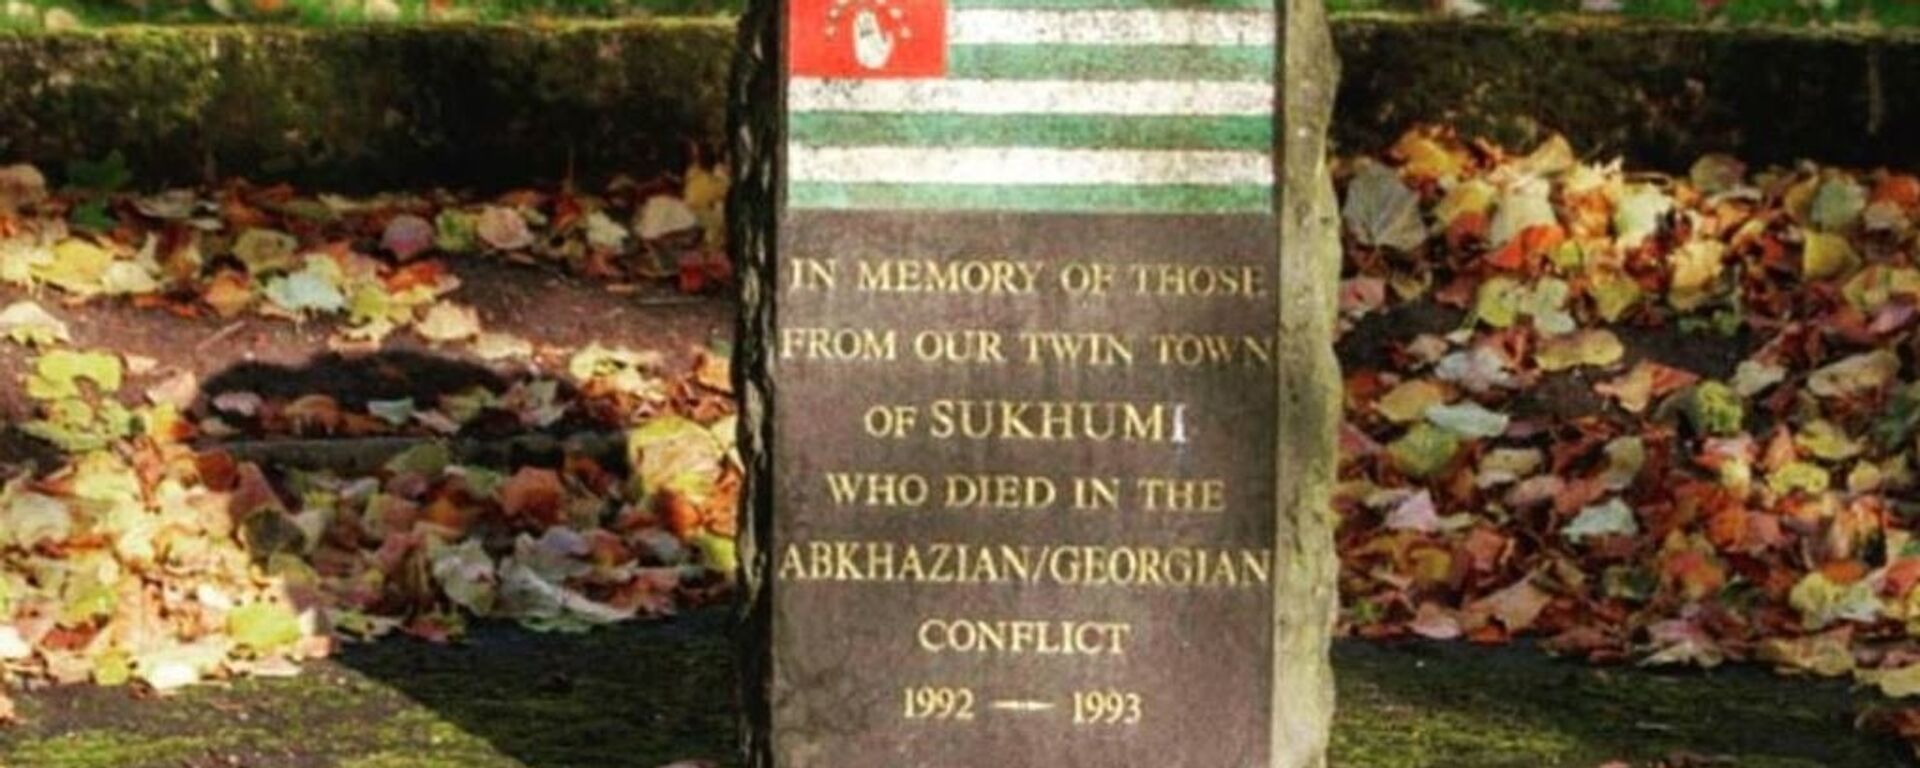 Мемориал в шотландском городе Килмарнок, установленный в память об абхазских воинах, погибших в результате агрессии Грузии в 1992-1993 годах - Sputnik Аҧсны, 1920, 26.12.2017